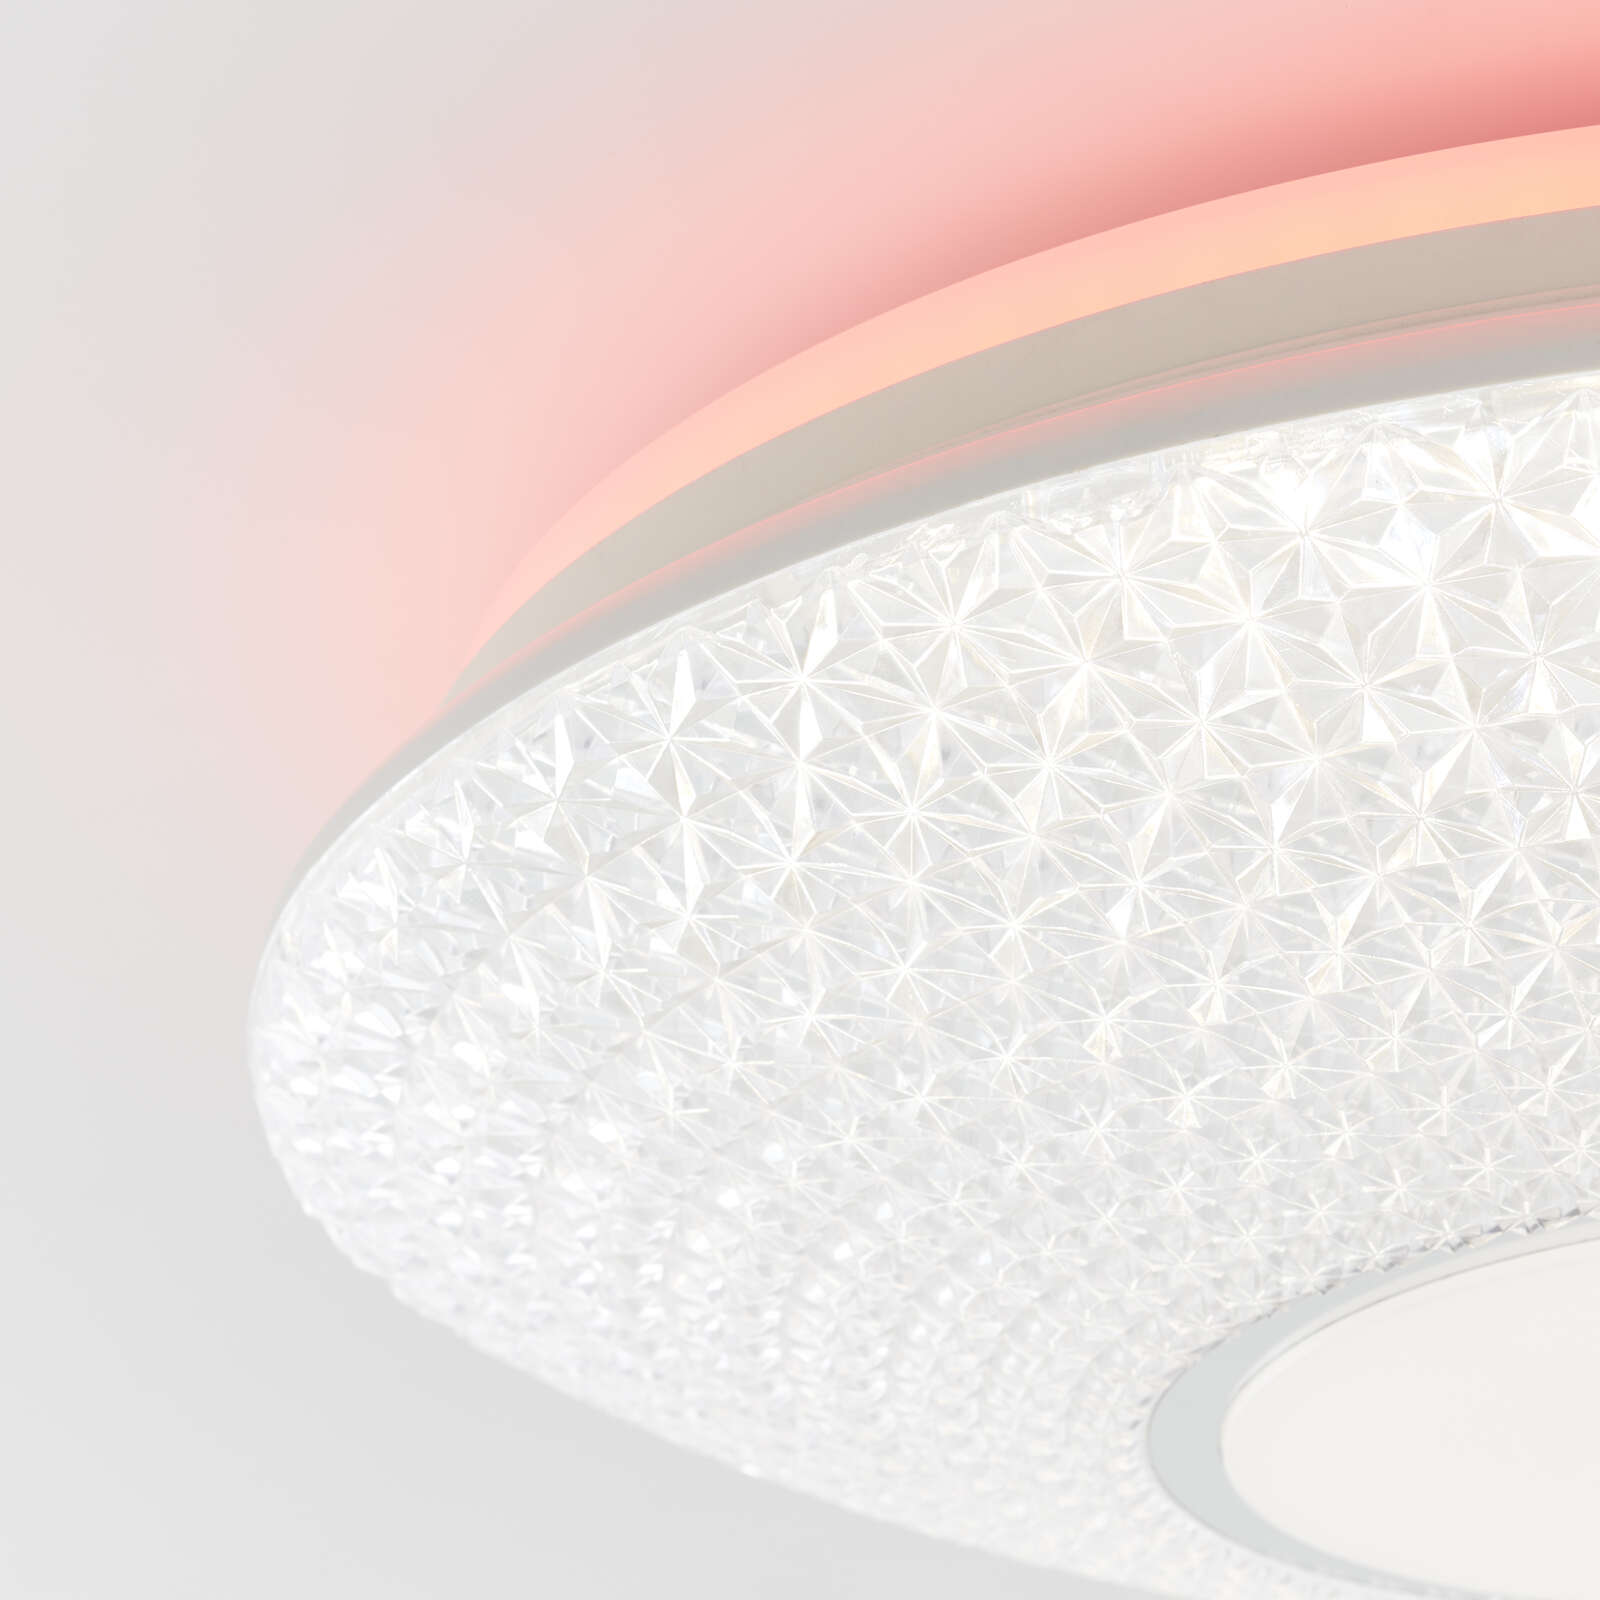             Kunststof plafondlamp - Leandra 2 - Wit
        